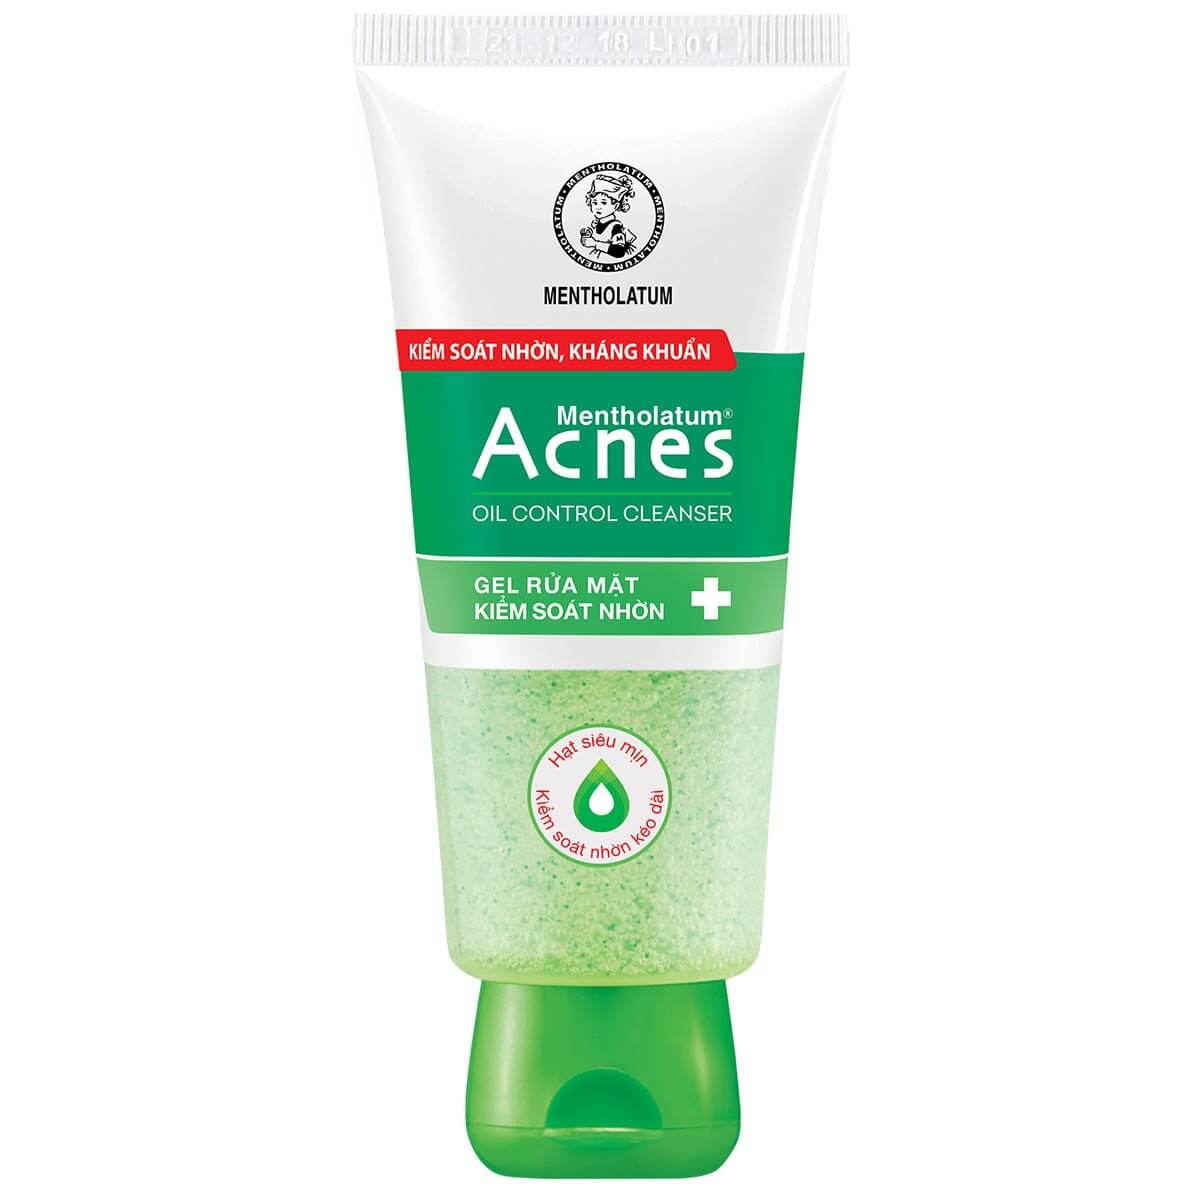 HCMGel rửa mặt kiểm soát nhờn ngăn ngừa mụn Acnes Oil Control Cleanser da không bóng dầu thumbnail